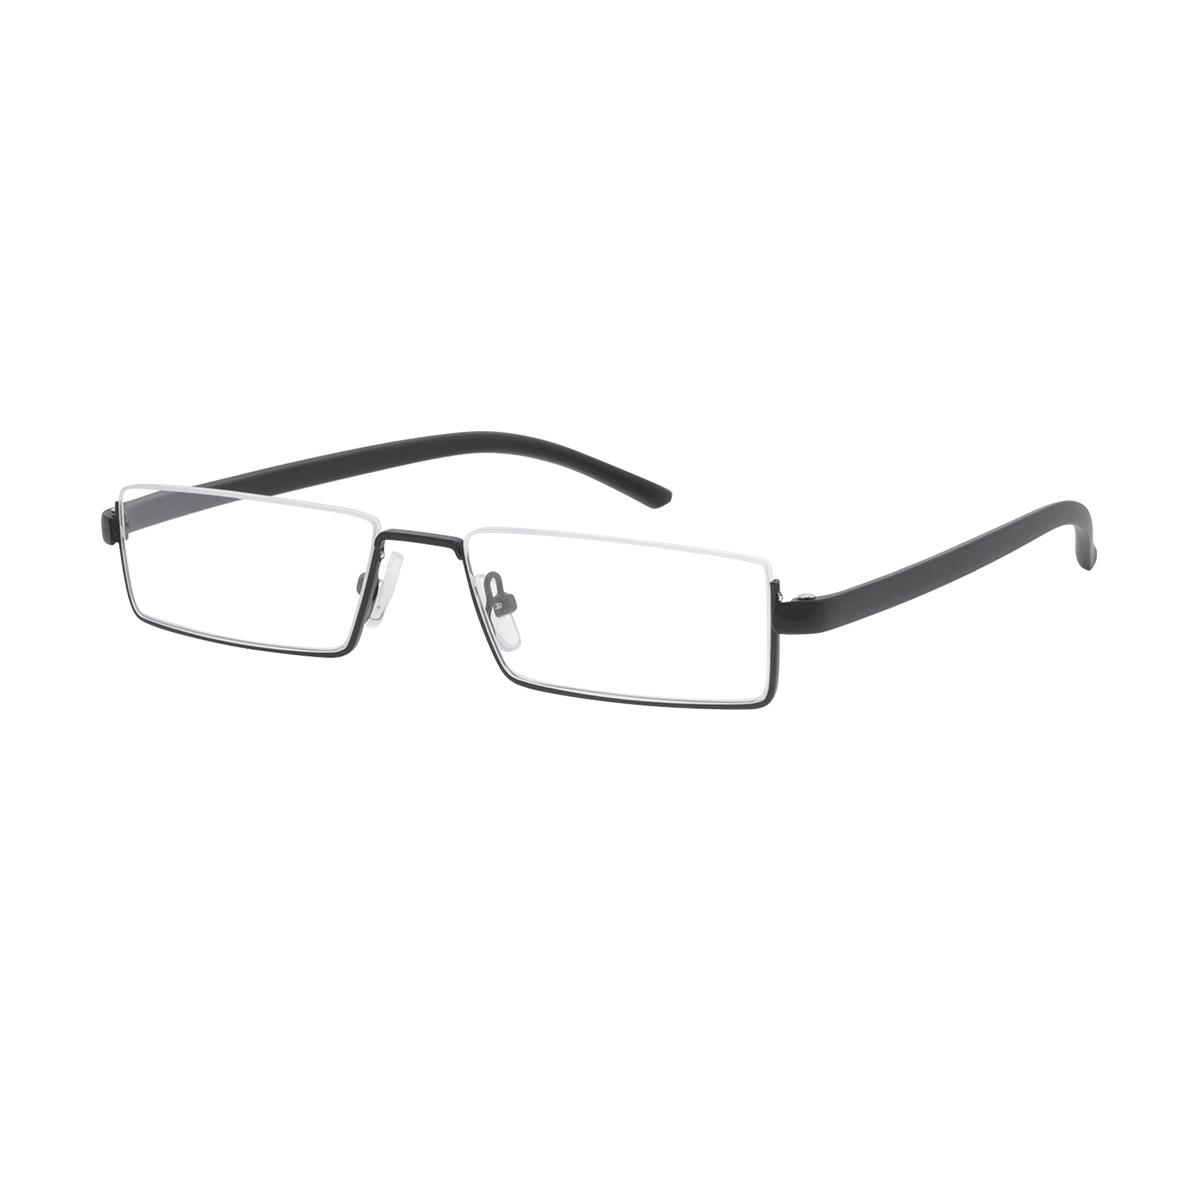 Welson - Rectangle Black Reading Glasses for Men